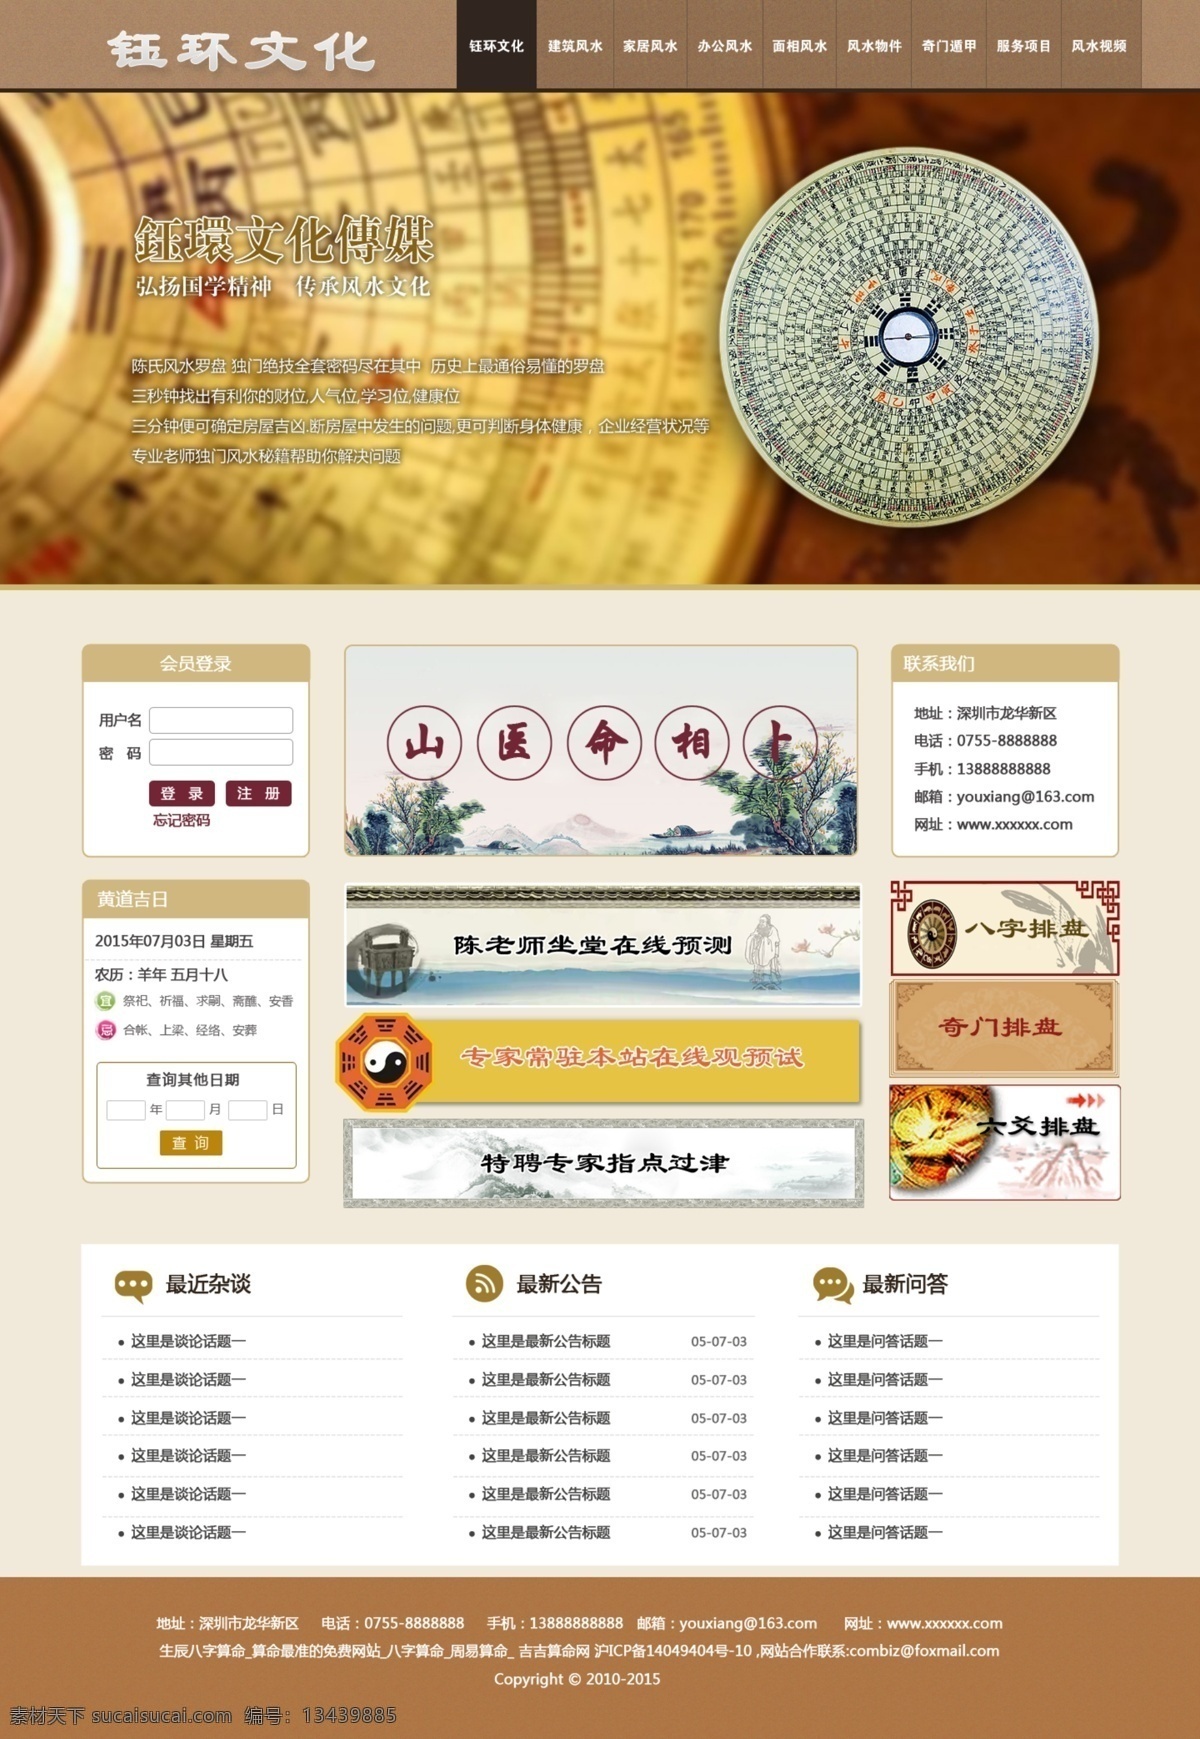 占卜网站 占卜 算命 六爻 八字 奇门 web 界面设计 中文模板